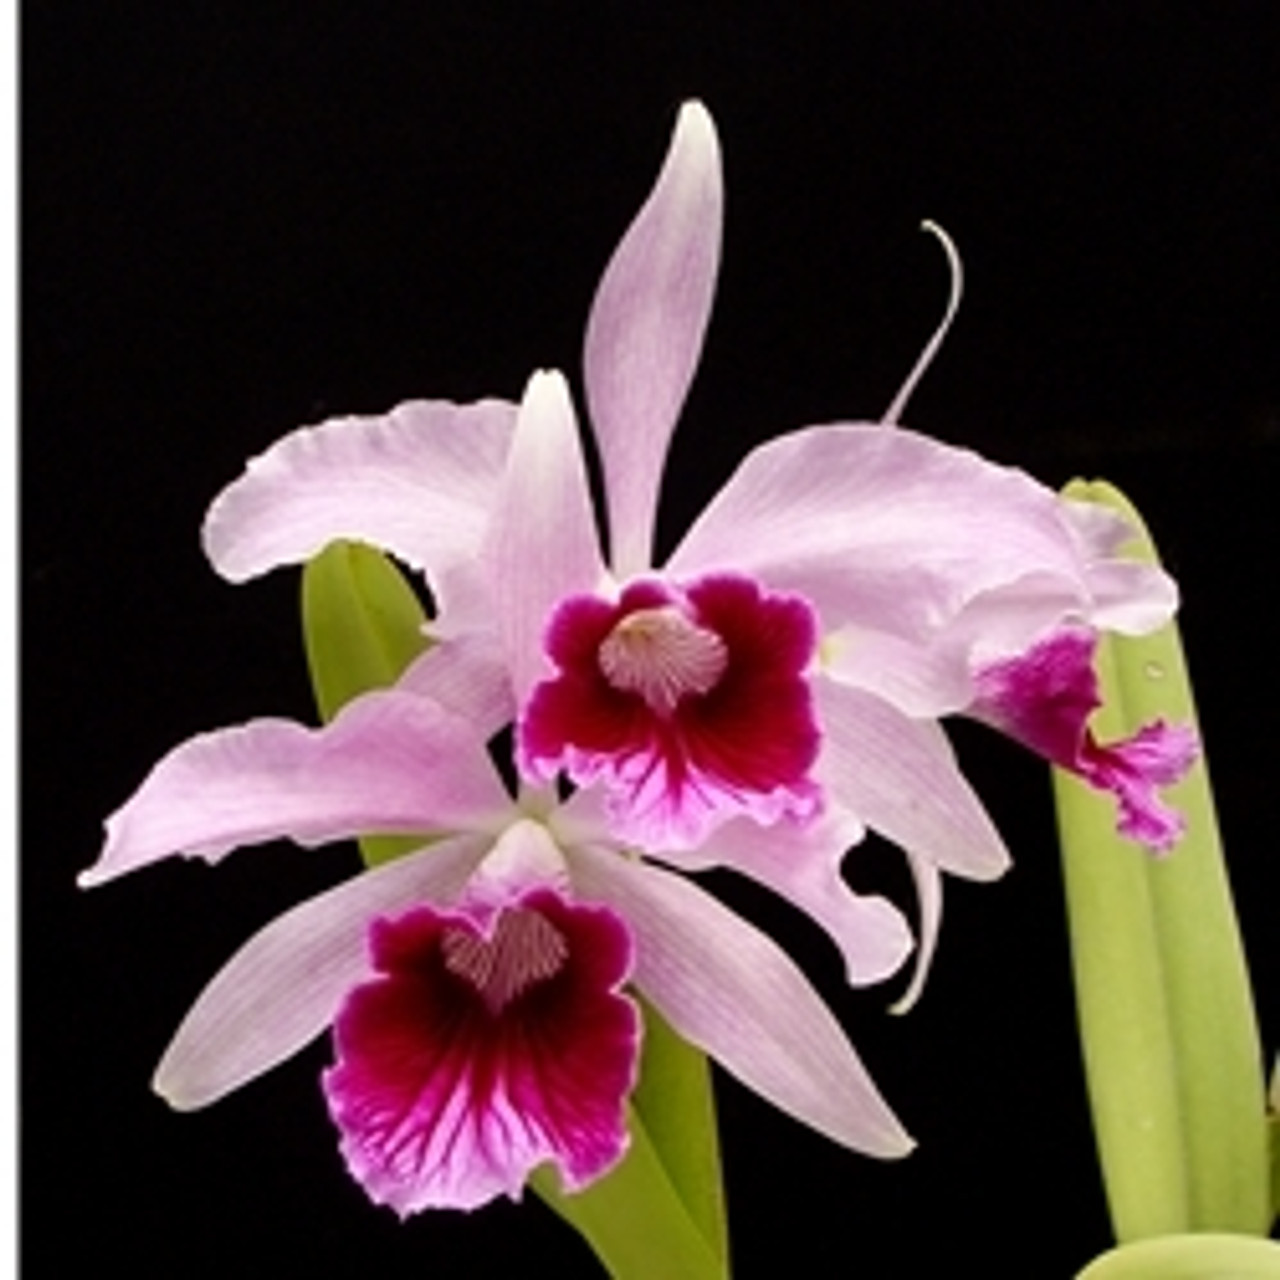 Laelia purpurata (var. schusteriana x var. sanguinea) - OrchidWeb